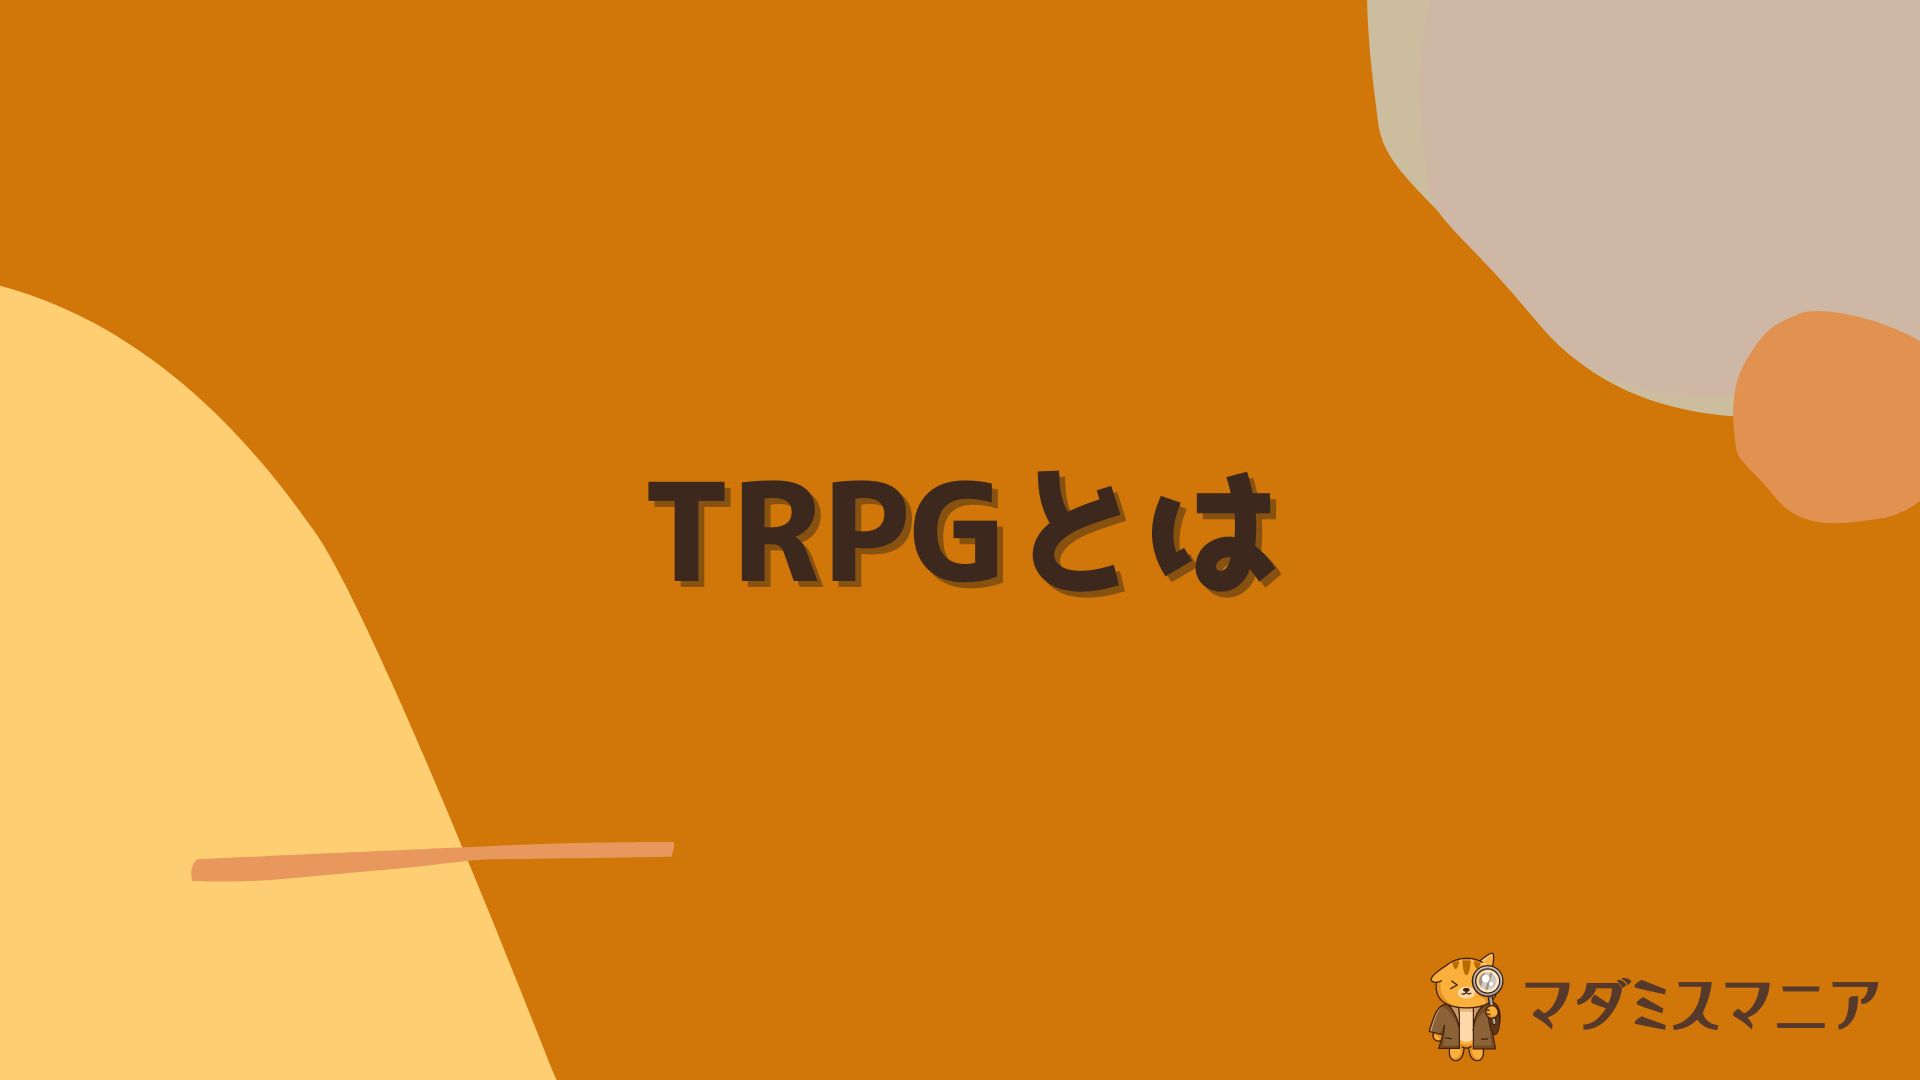 TRPG(テーブルトークRPG)とは